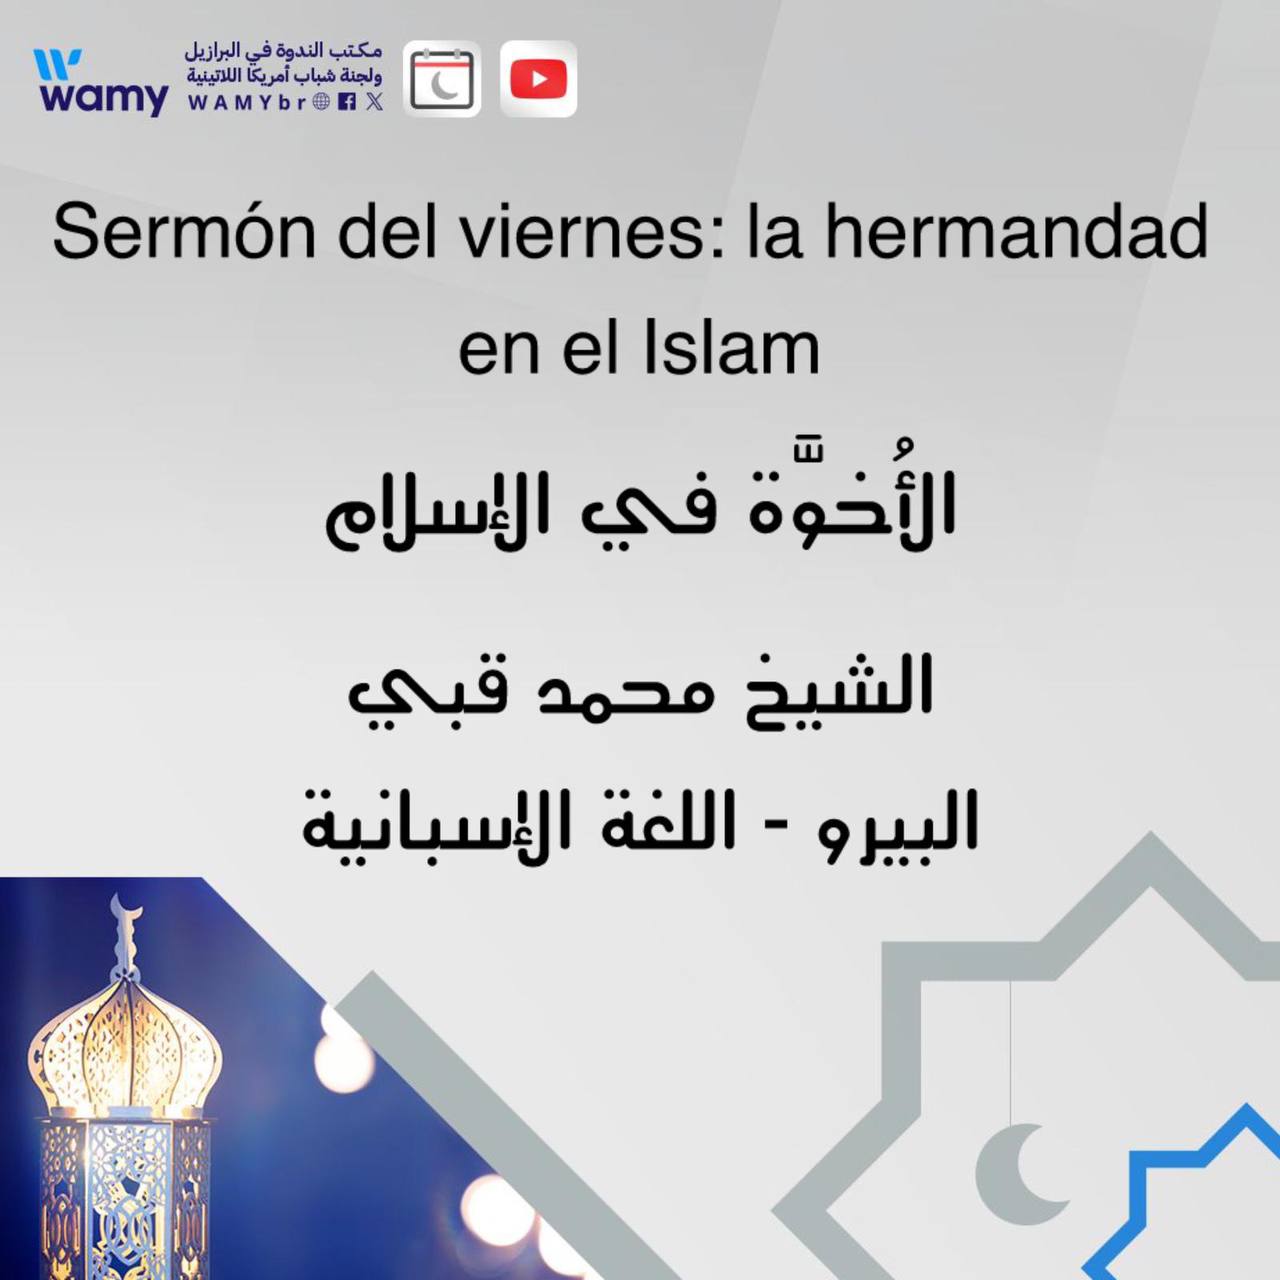 Sermón del viernes: la hermandad en el Islam